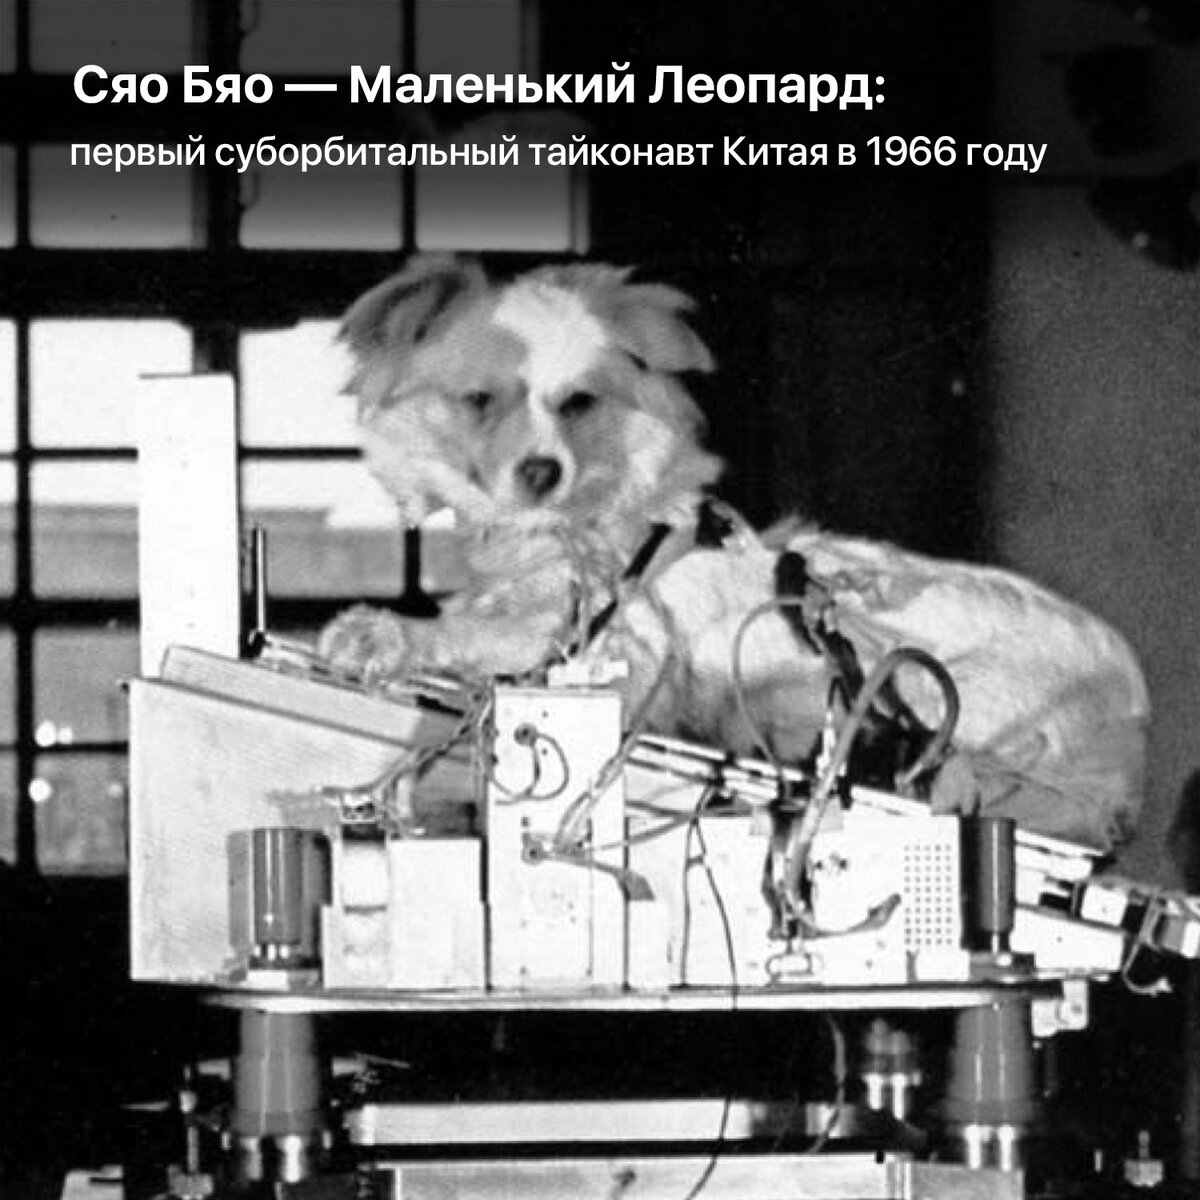 16 сентября 1960 года с полигона Капустин Яр состоялся запуск геофизической ракеты Р-2А, на борту которой находились собаки Пальма-2 и Малёк.-2 height=1200px width=1200px